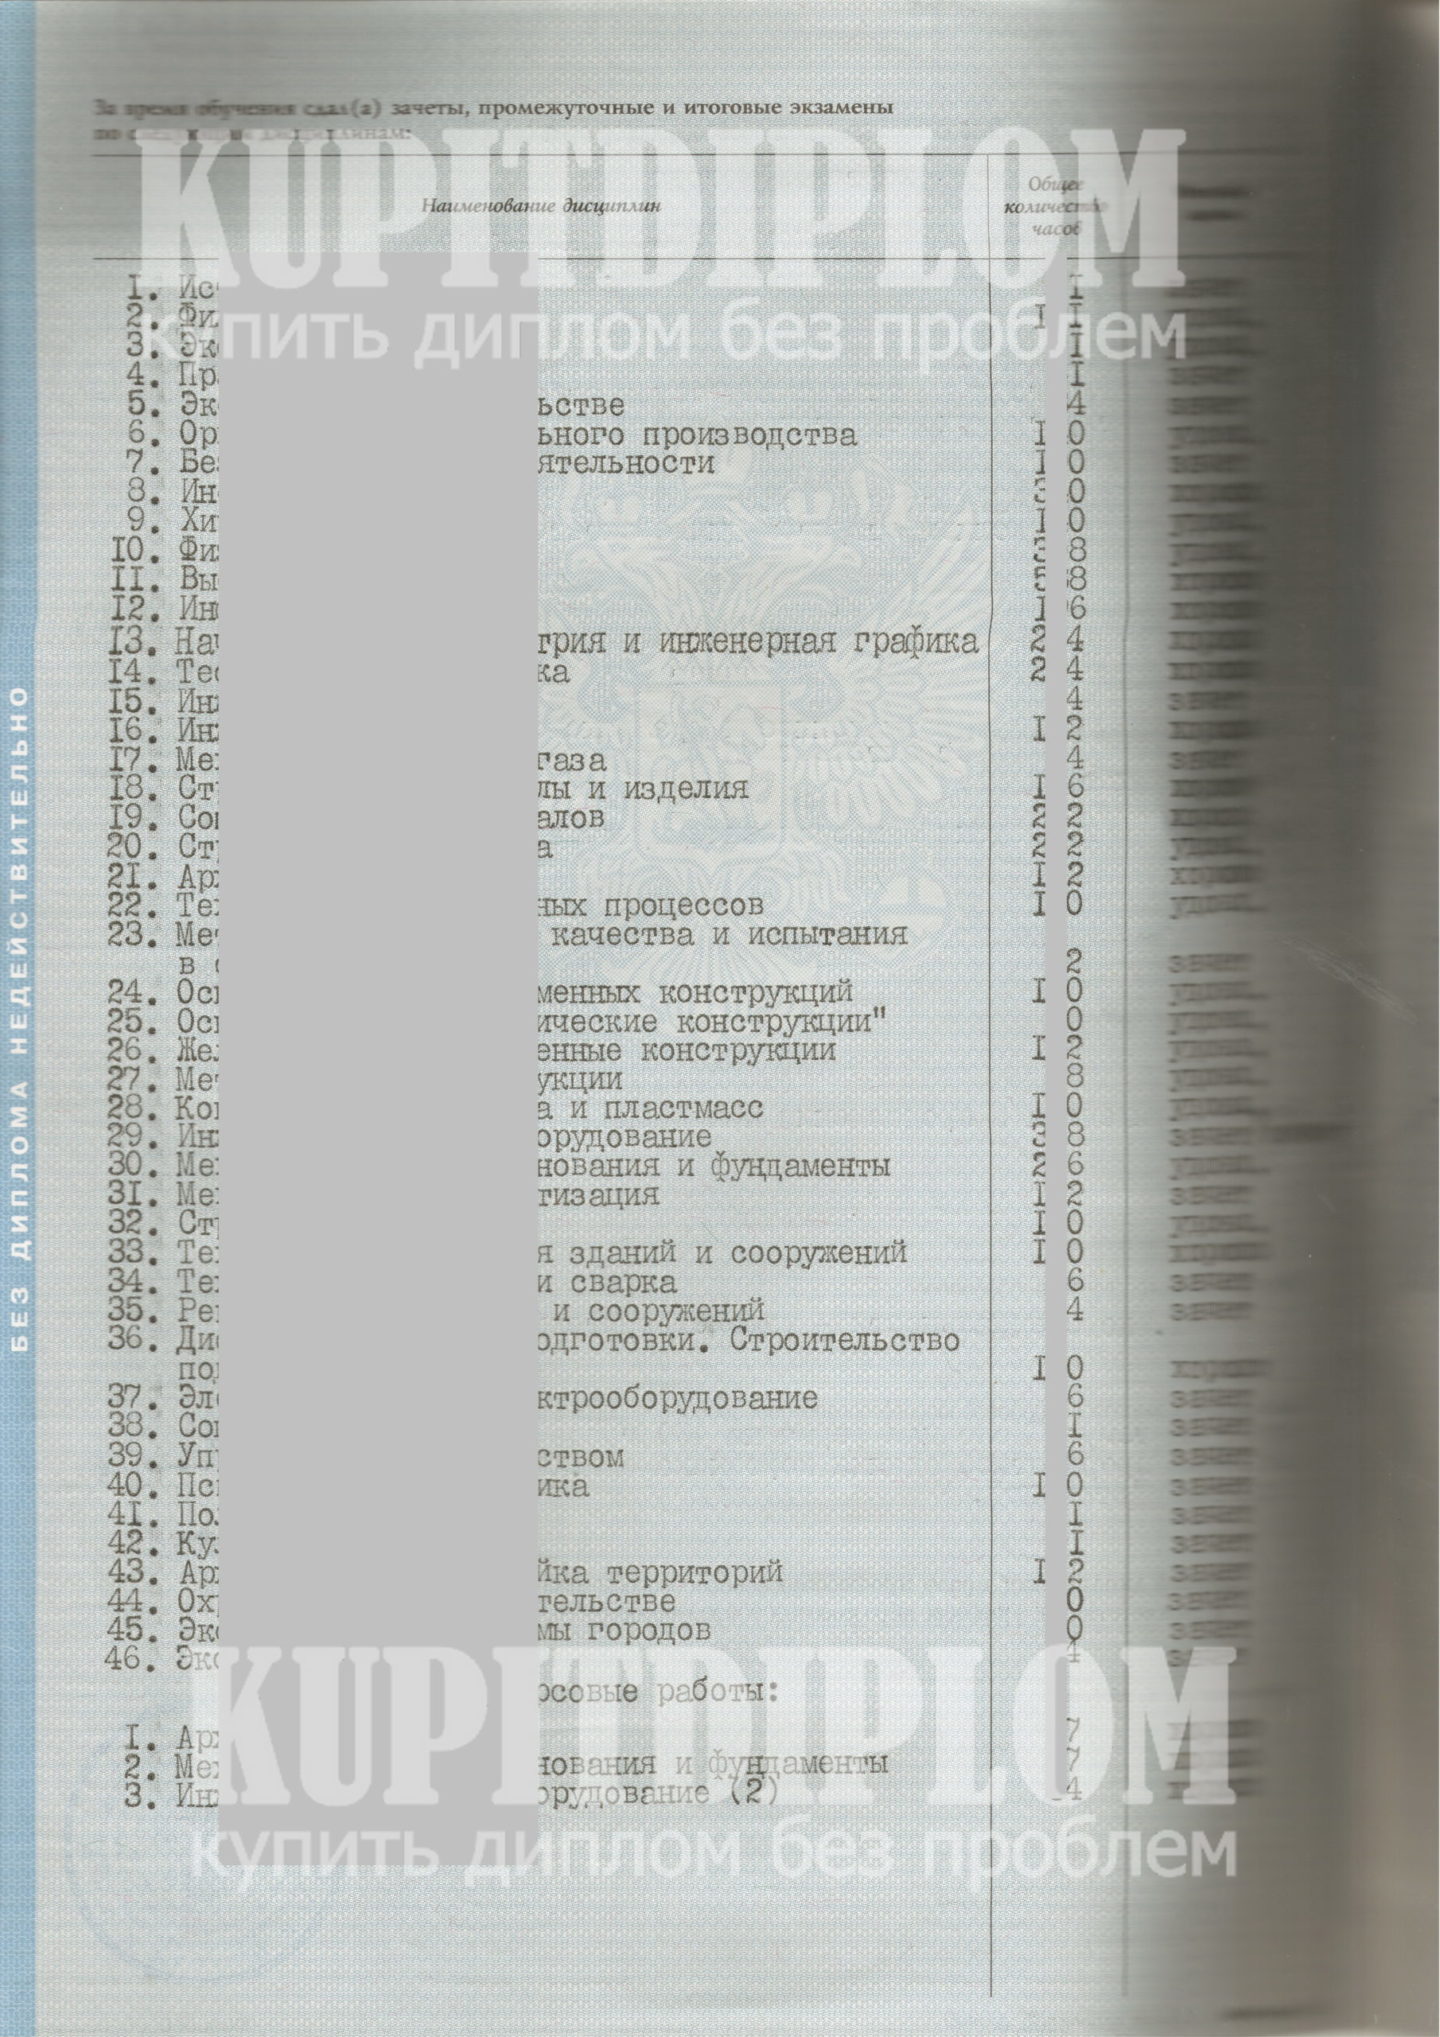 Оценочный лист диплома МГОУ ПГС 2004